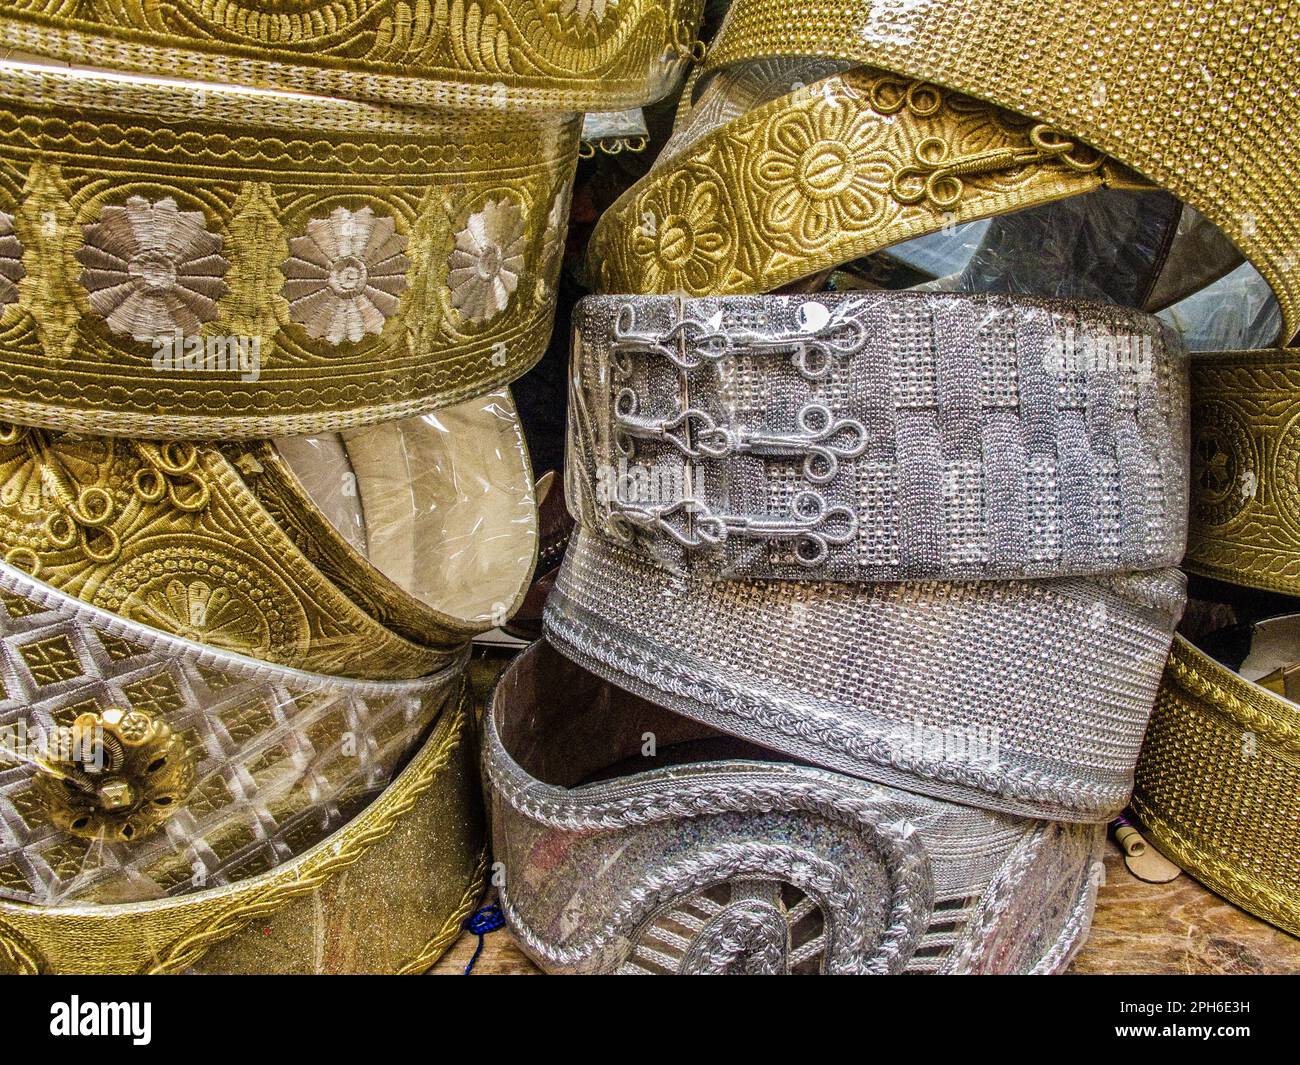 Cinture da sposa in oro e argento, Fes, Marocco Foto Stock